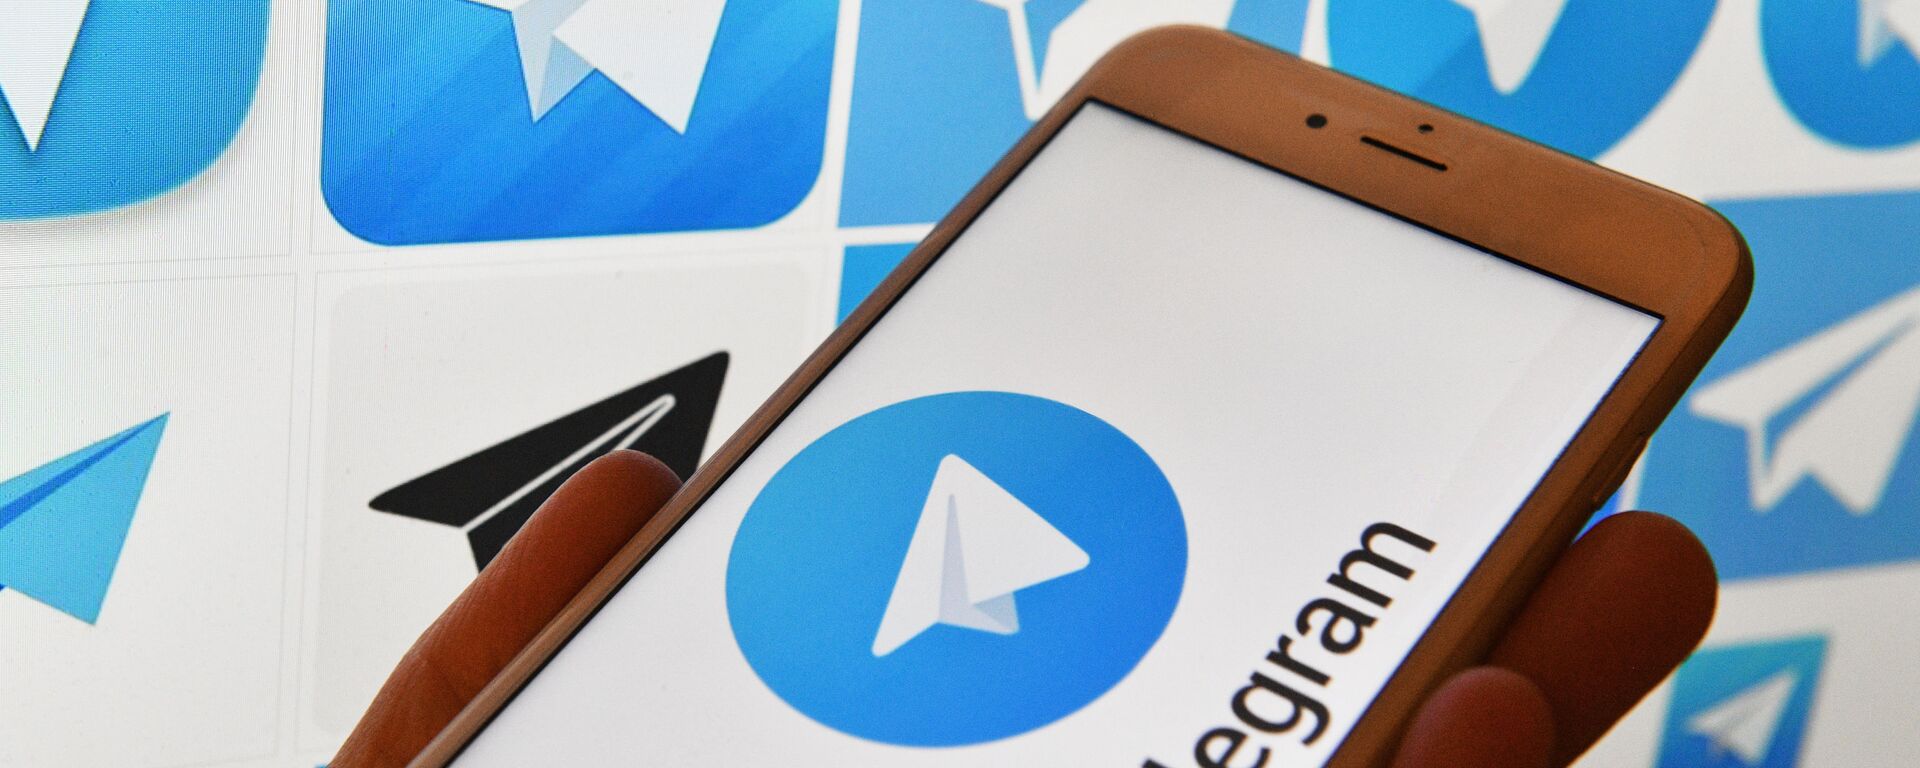 Логотип мессенджера Telegram на экранах смартфона и компьютера - Sputnik Узбекистан, 1920, 13.05.2021